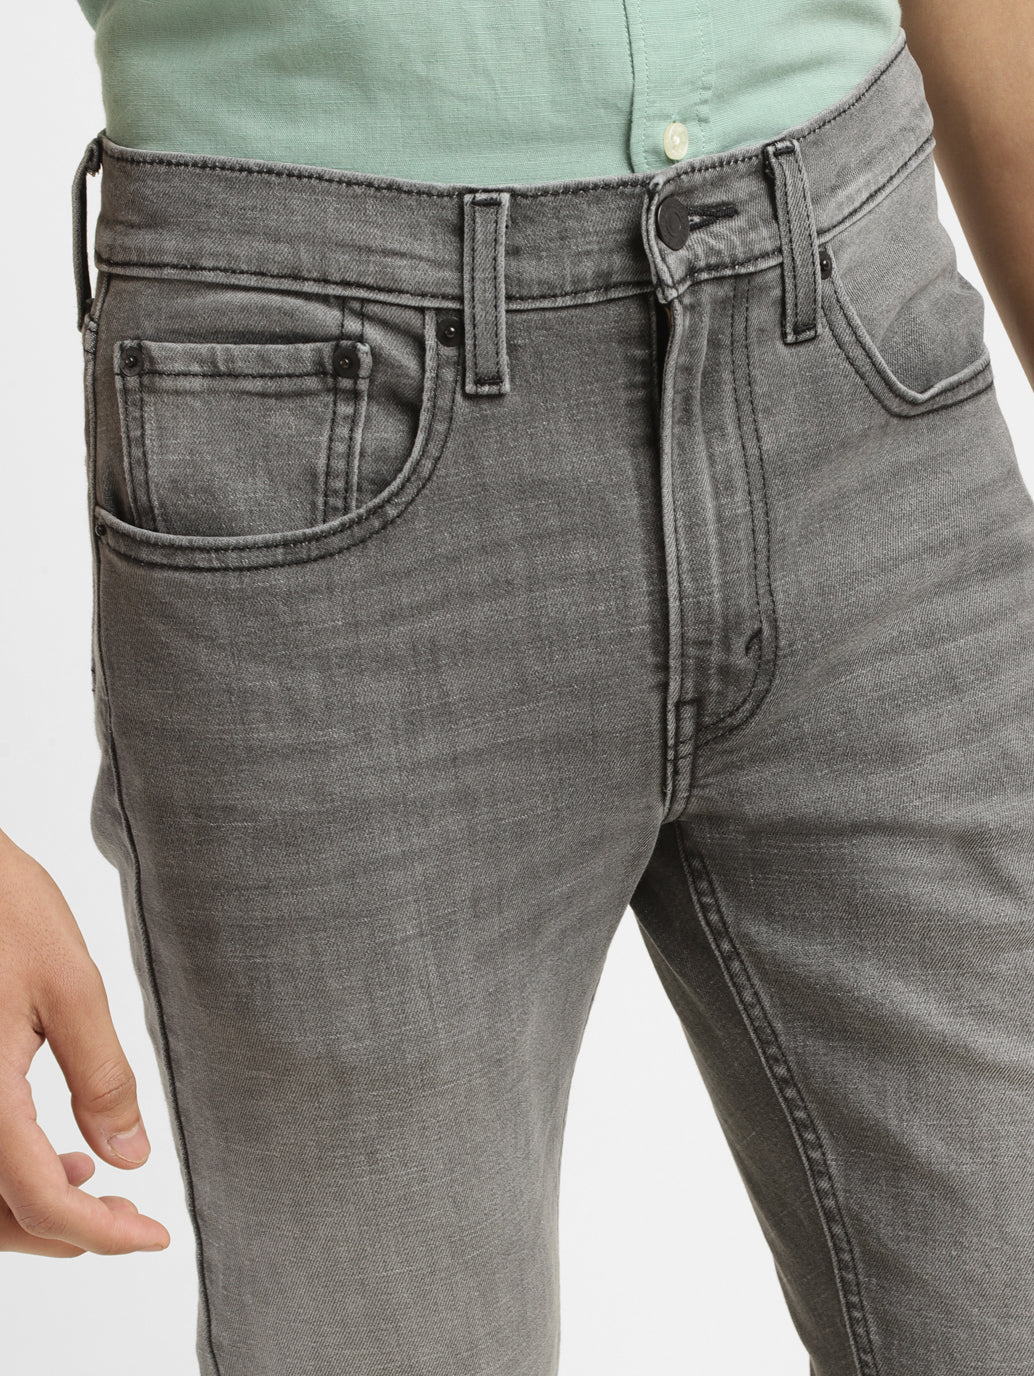 Men's Grey Skinny Taper Jeans